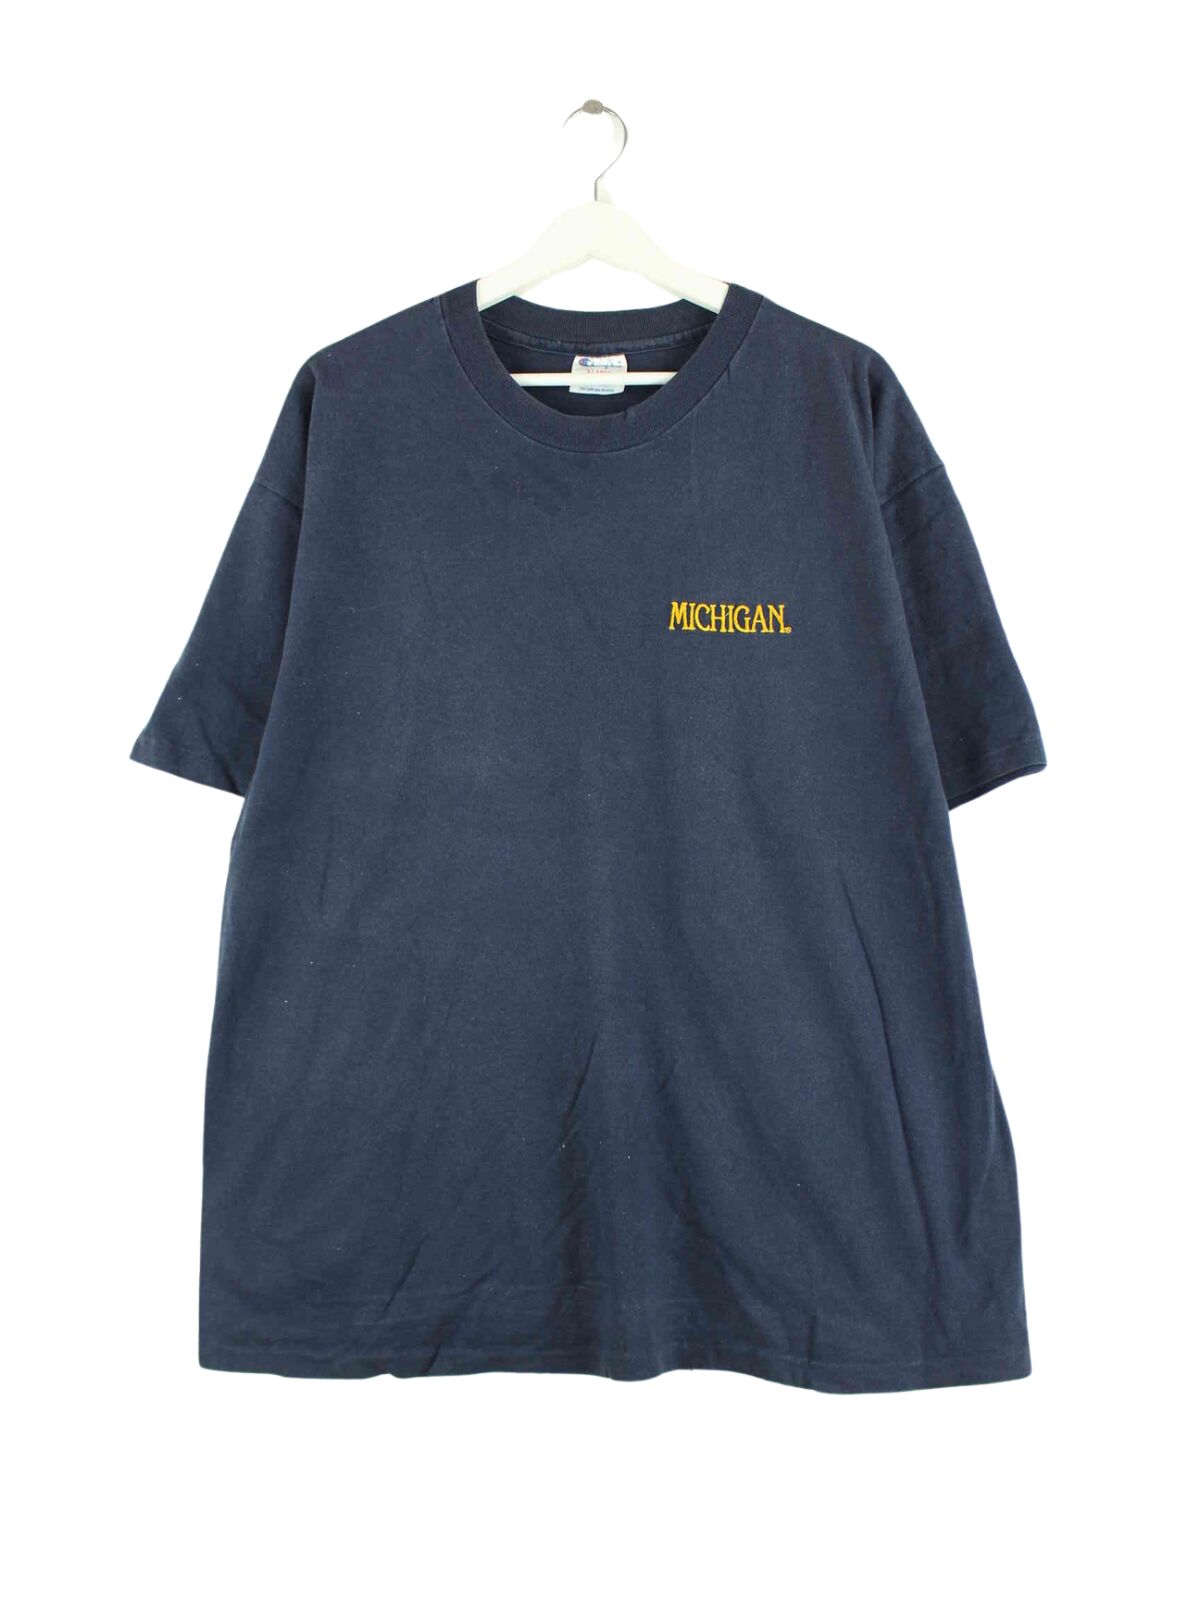 Champion Michigan Embrodiered Single Stitched T-Shirt Blau XL (front image)